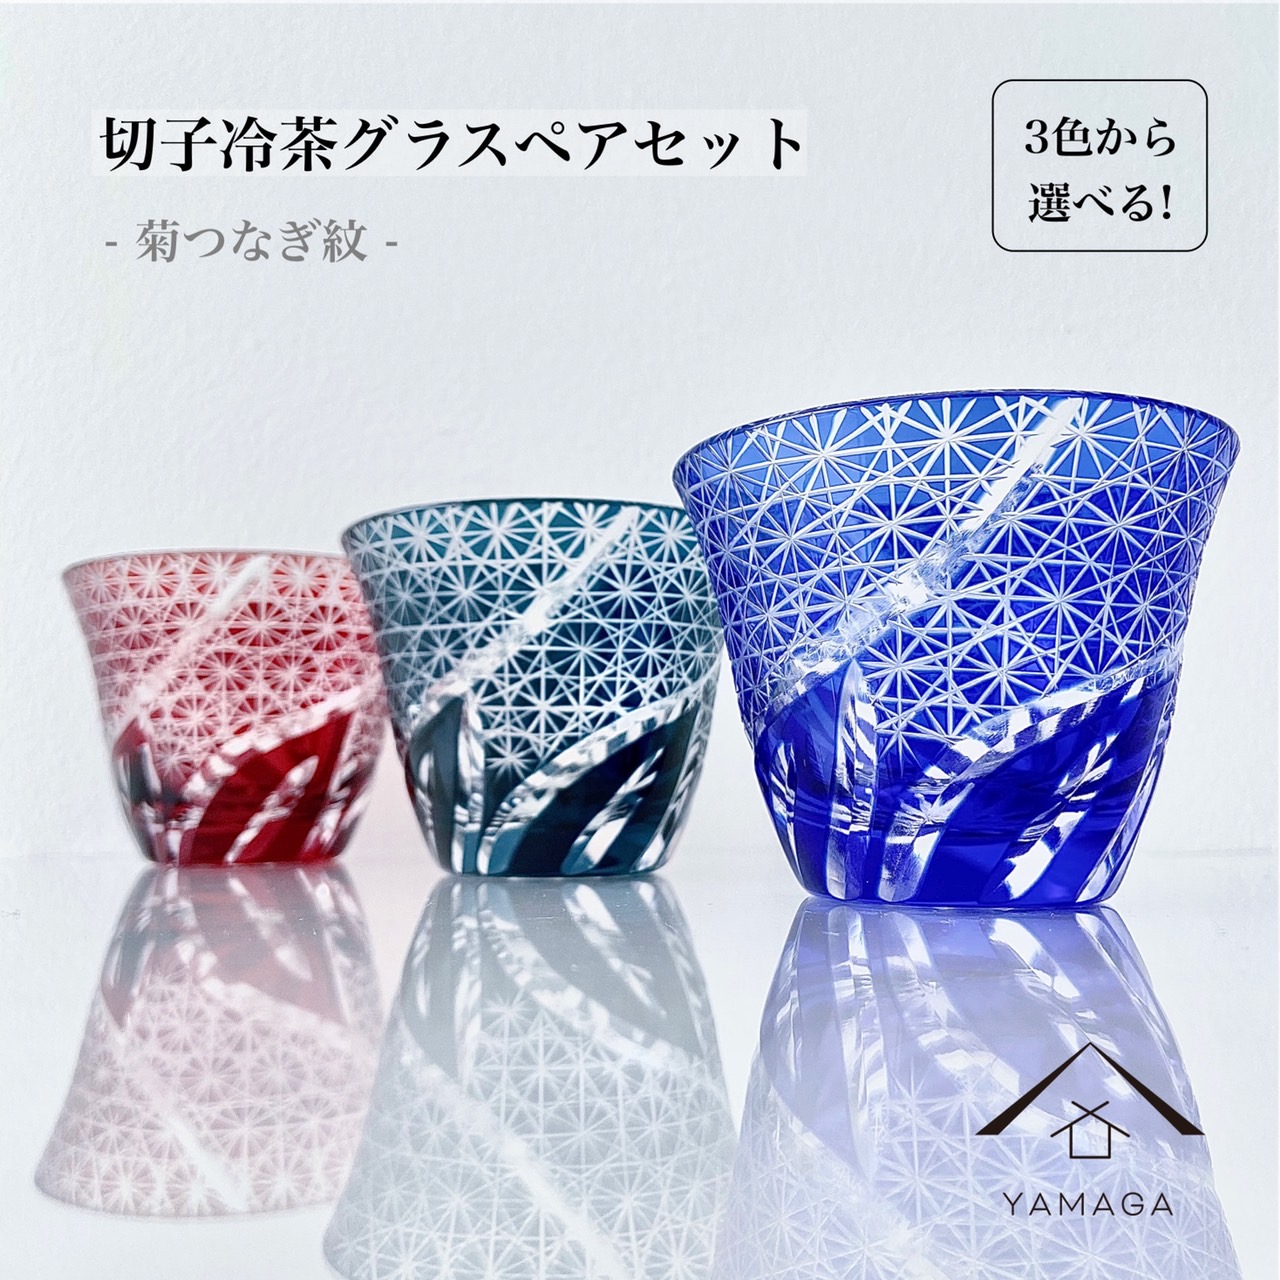 【選べる3色】 切子冷茶グラス 2個セット ペア